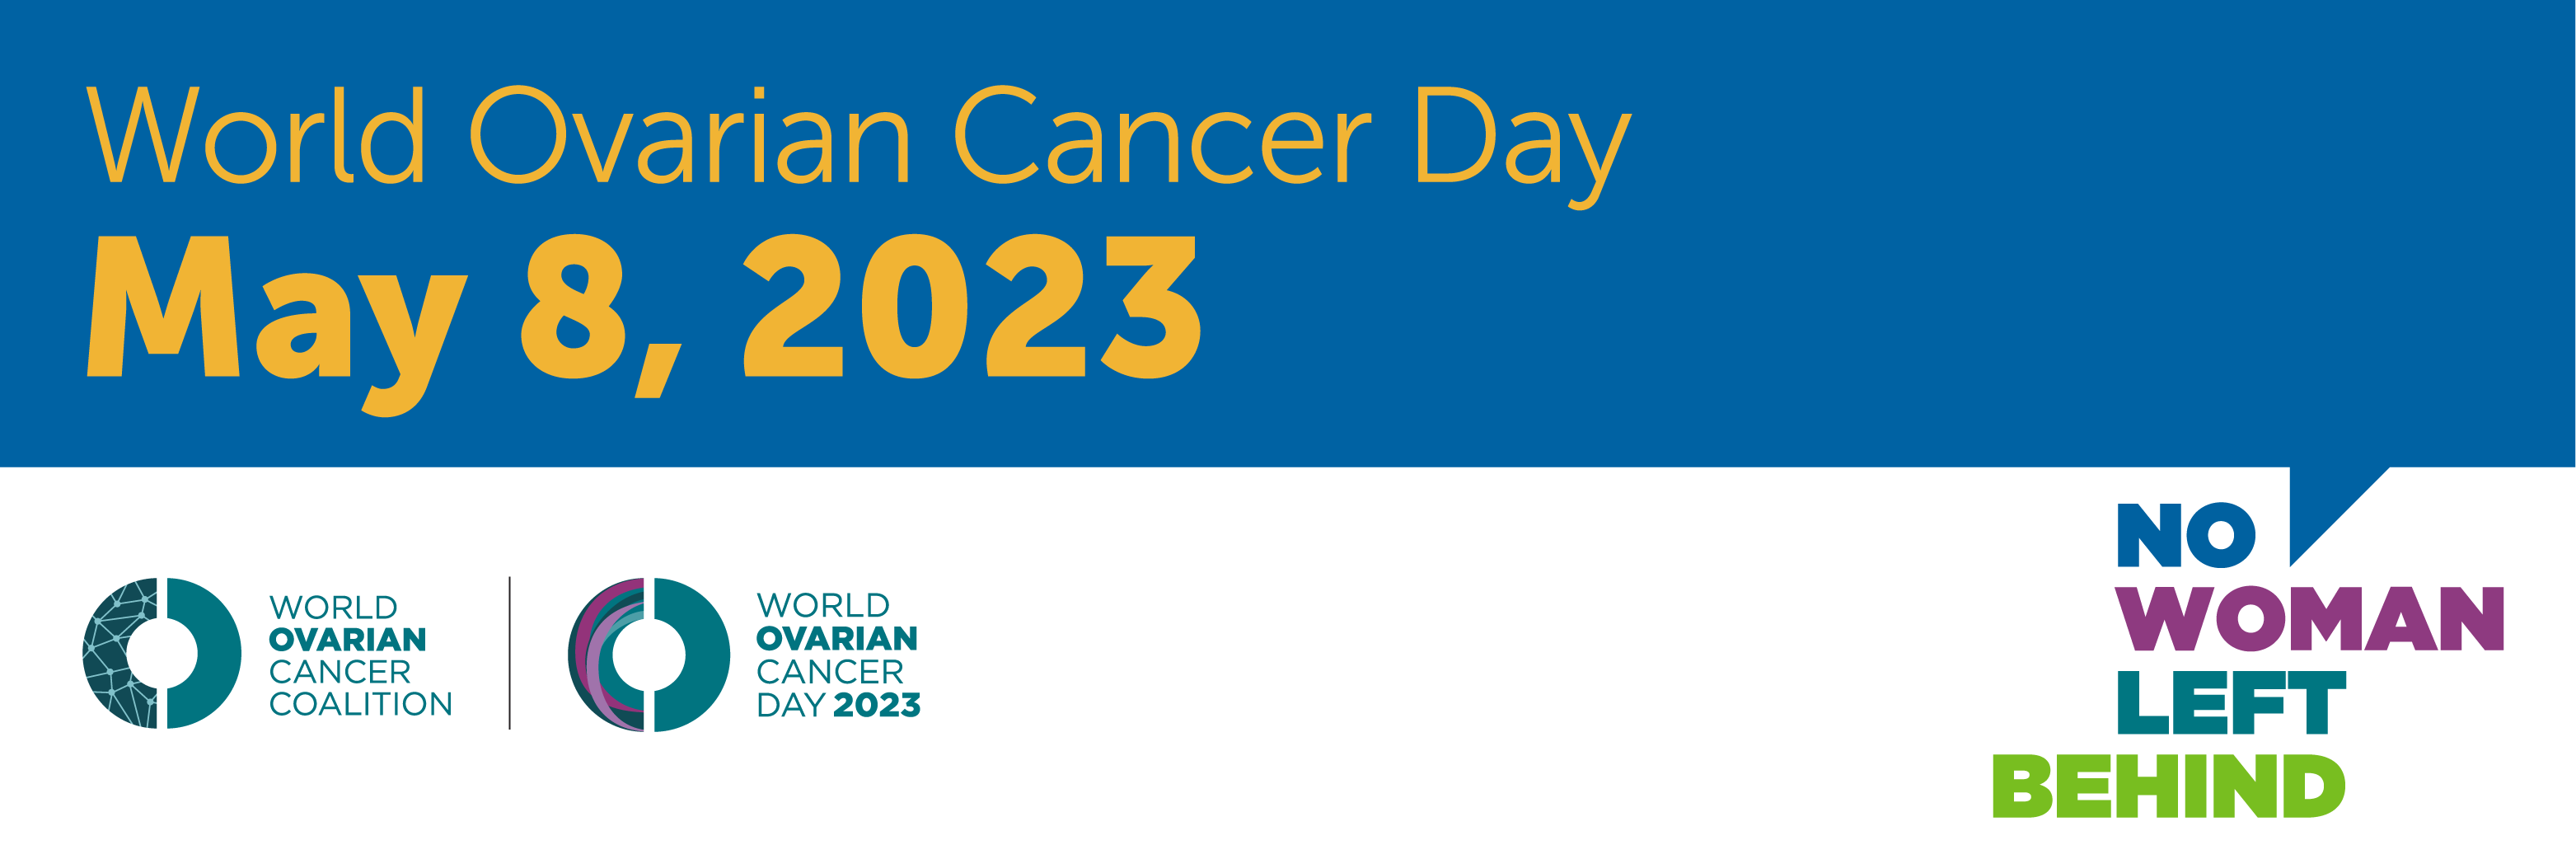 World Ovarian Cancer Day 2023